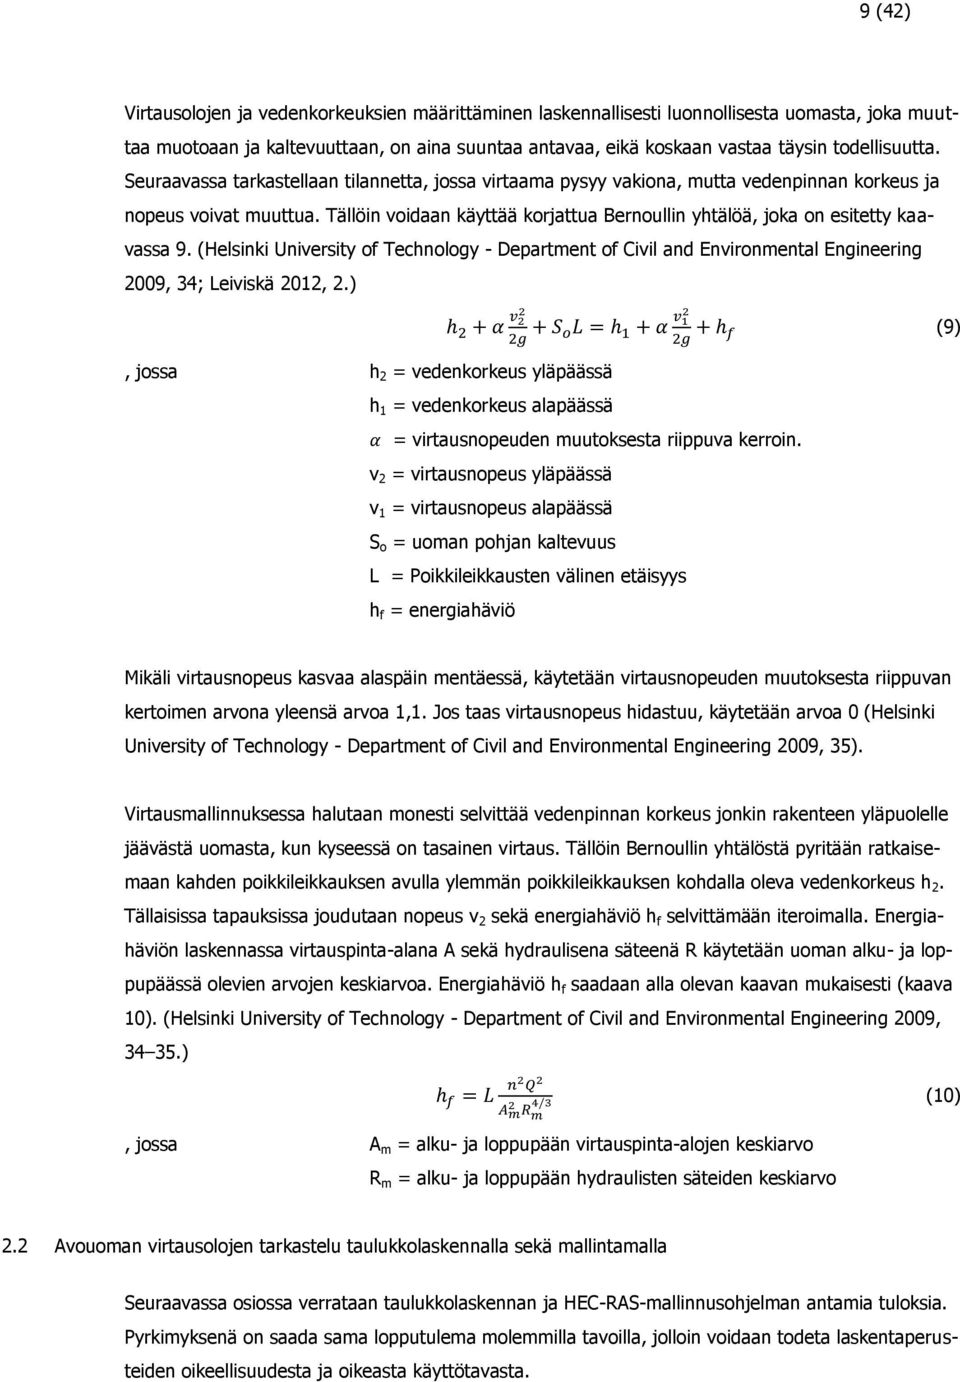 Tällöin voidaan käyttää korjattua Bernoullin yhtälöä, joka on esitetty kaavassa 9. (Helsinki University of Technology - Department of Civil and Environmental Engineering 2009, 34; Leiviskä 2012, 2.